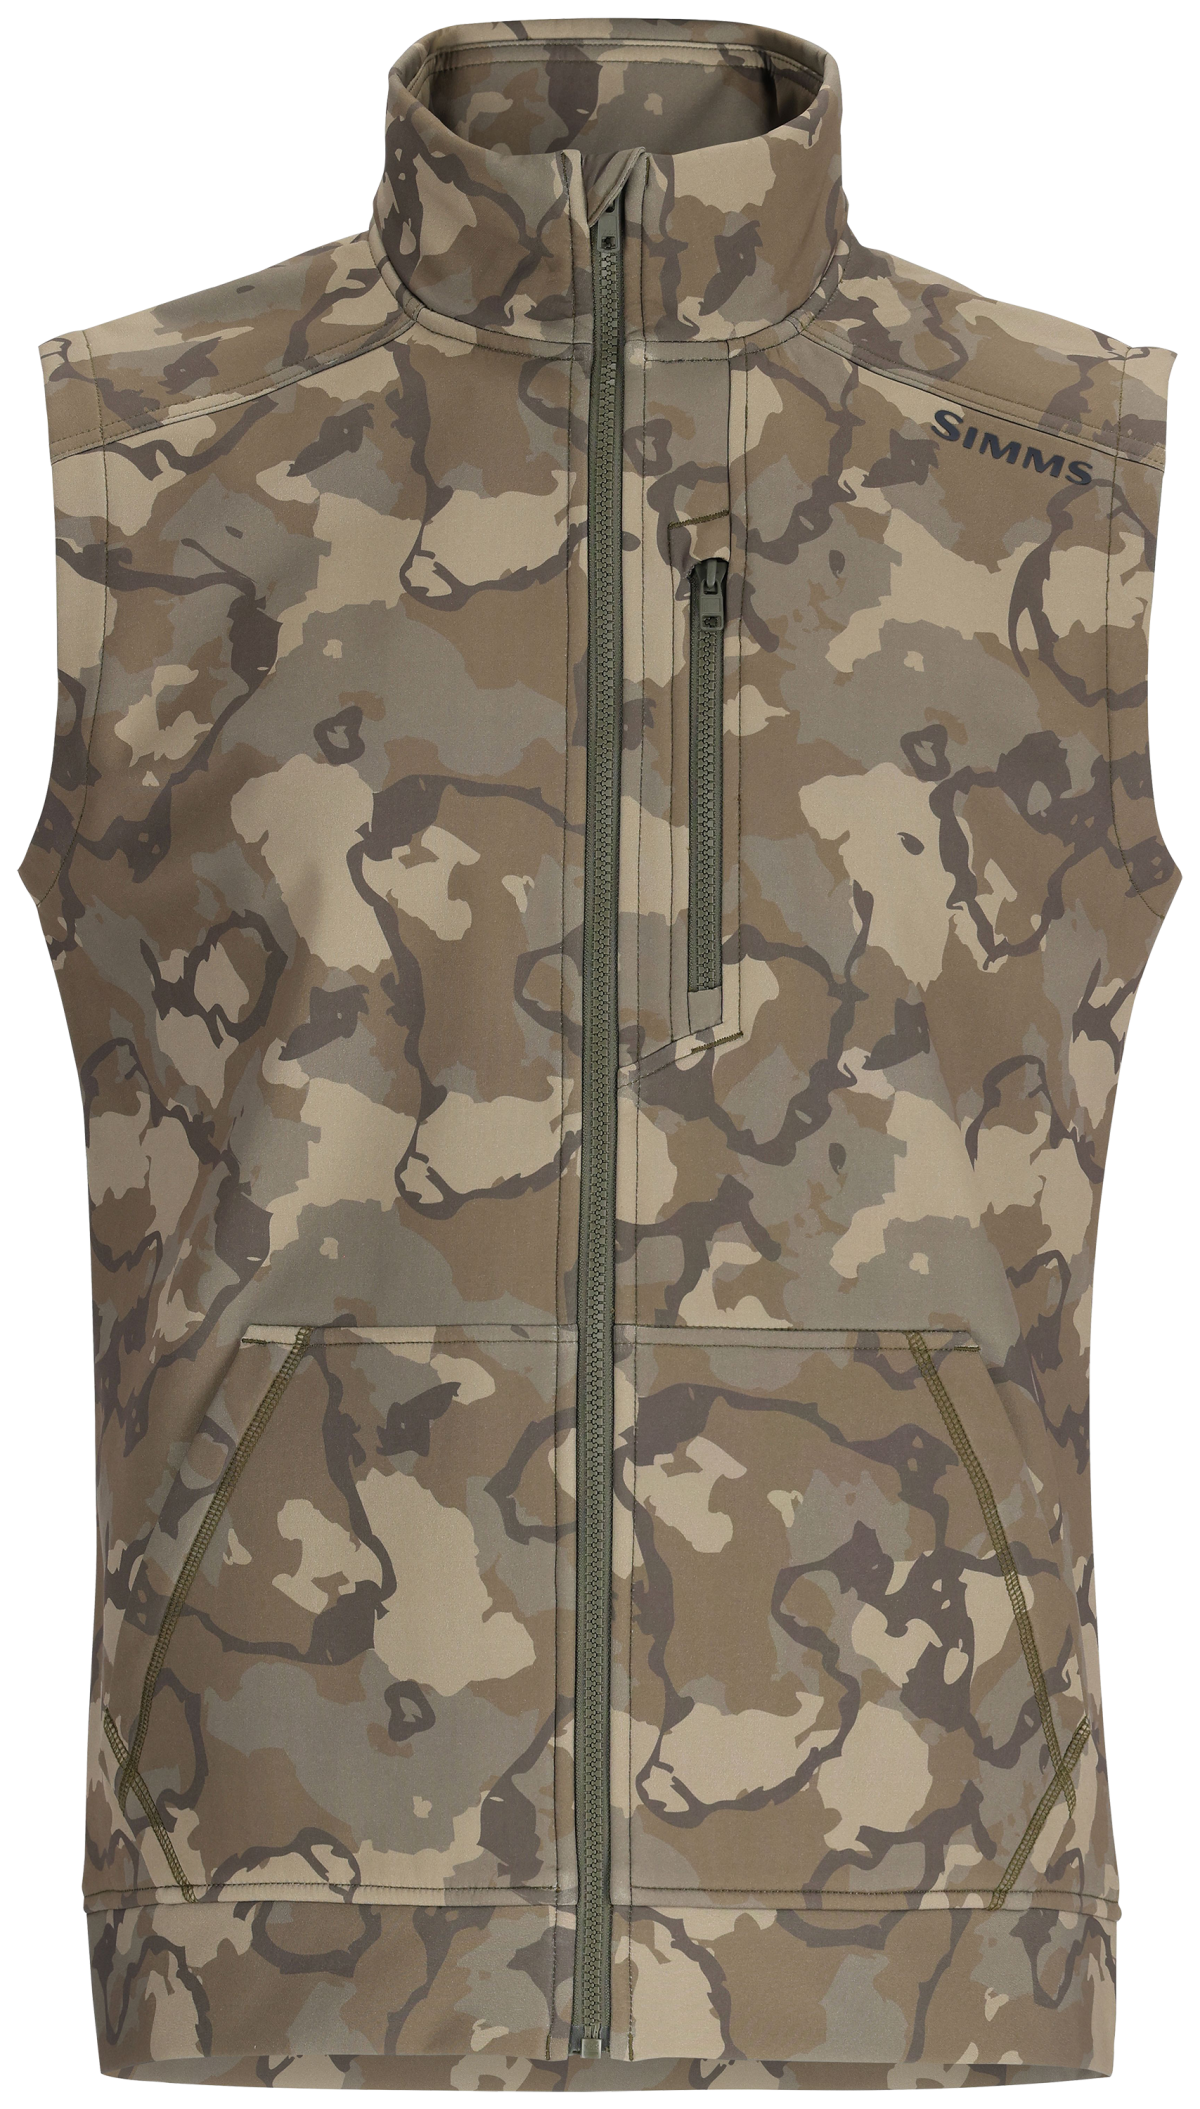 Simms Rogue Full-Zip Vest for Men - Regiment Camo Olive Drab - XXL